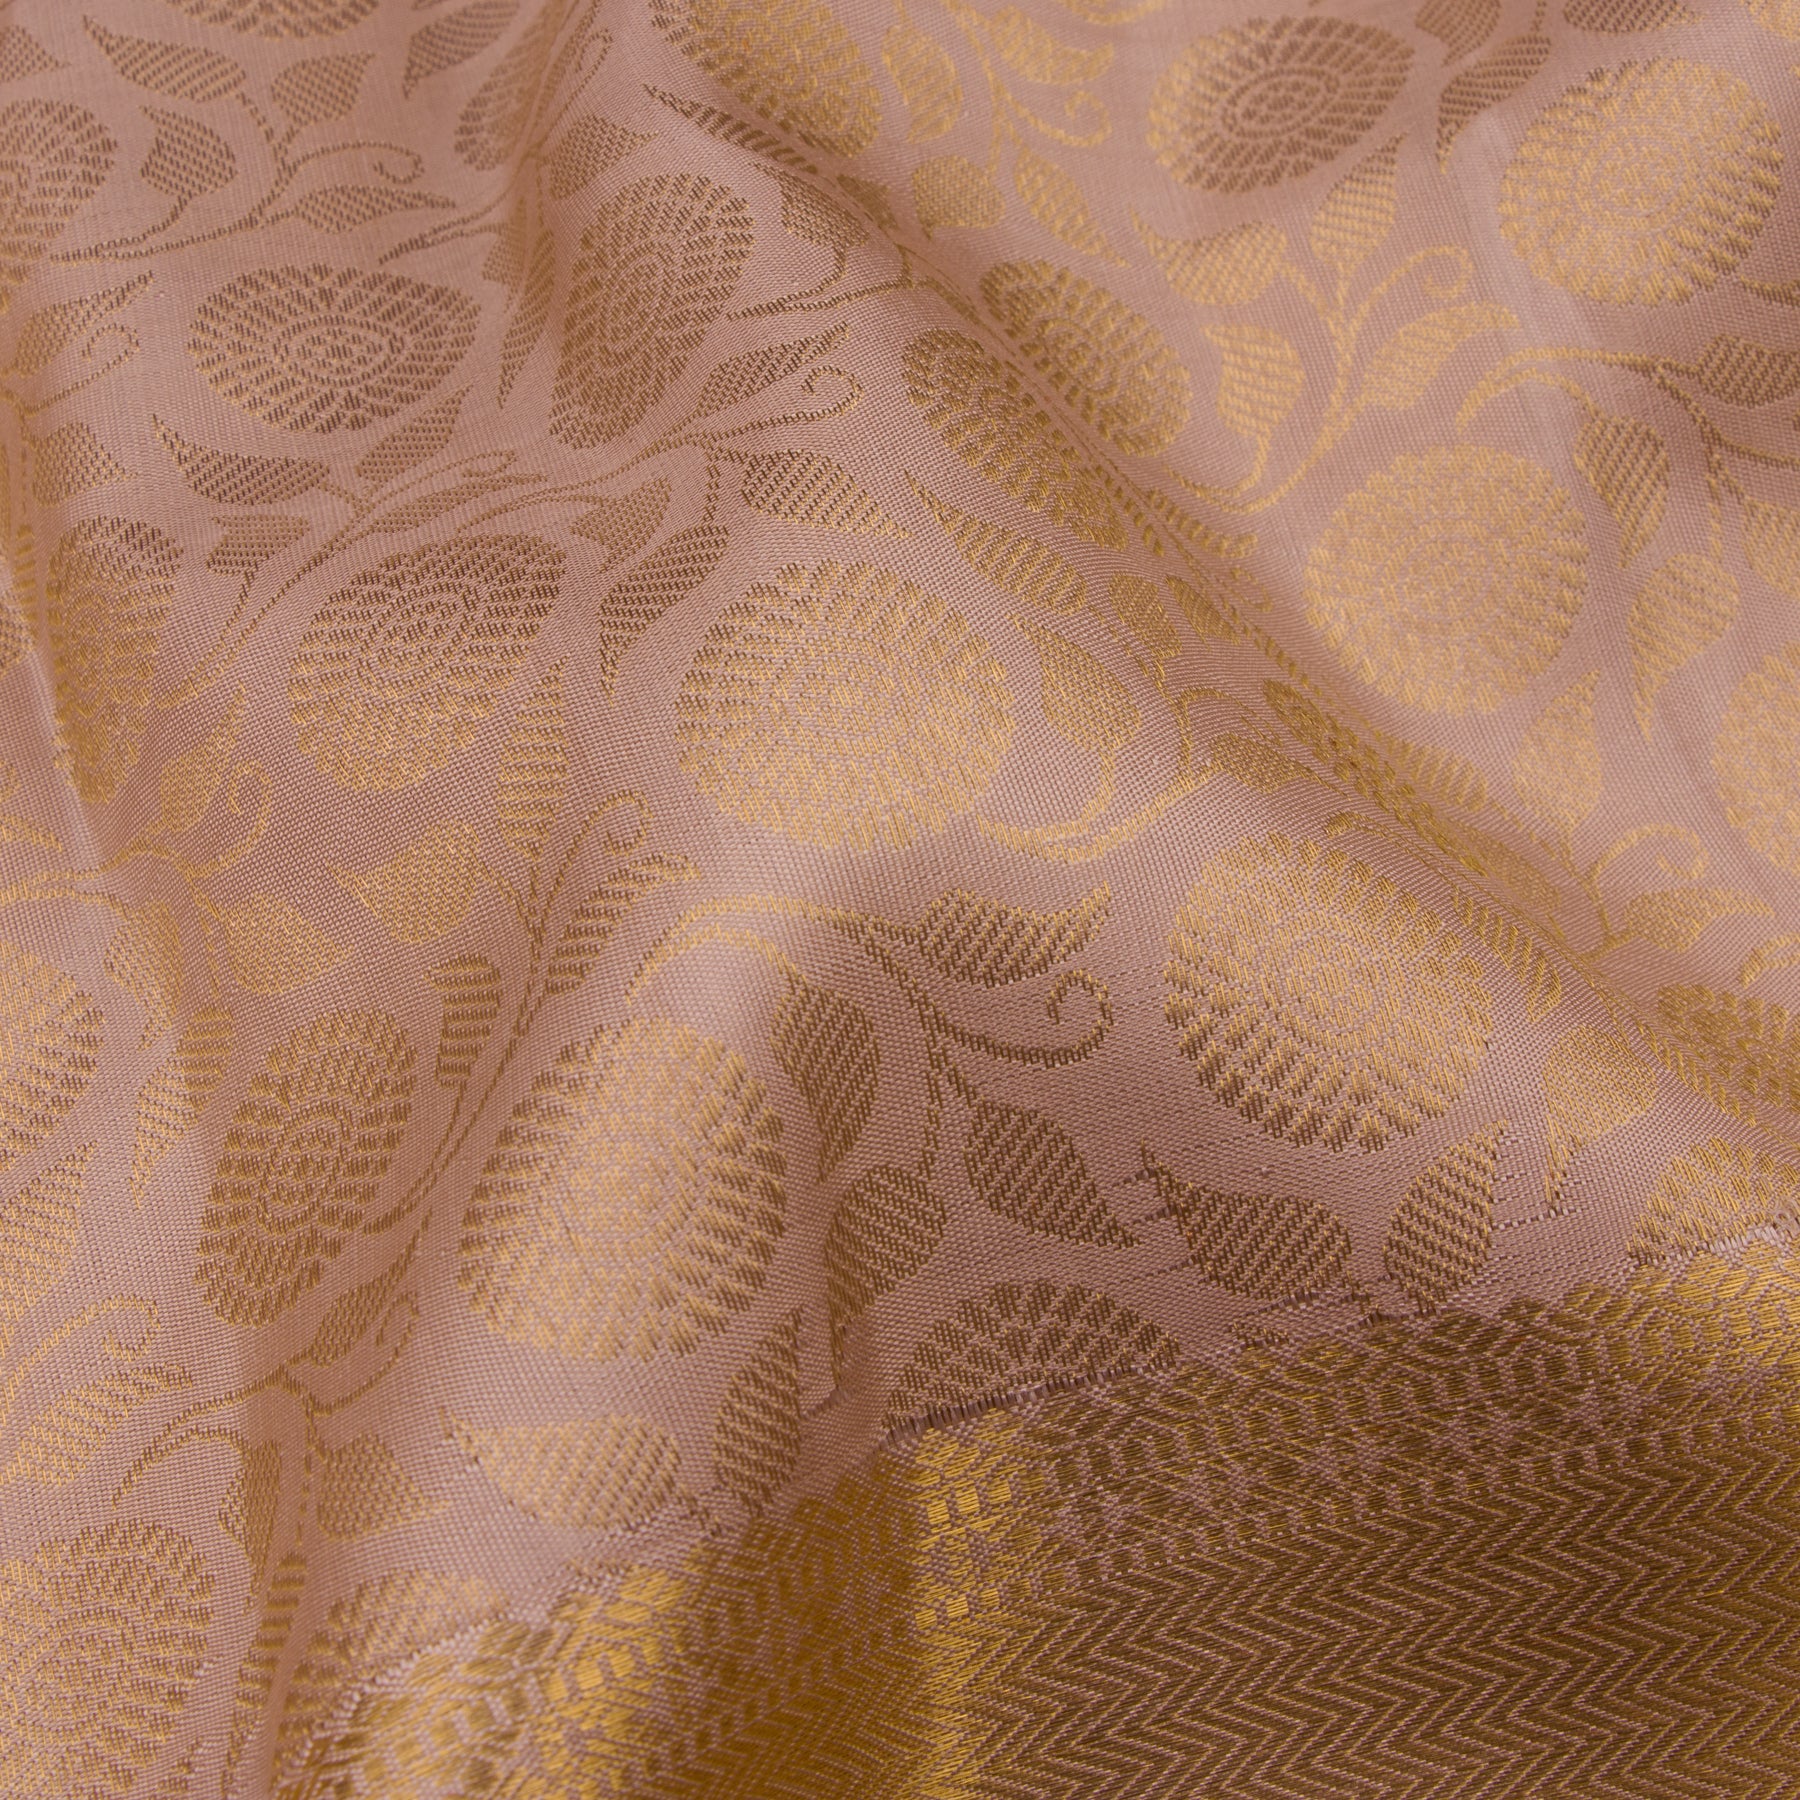 Kanakavalli Kanjivaram Silk Sari 22-586-HS001-01356 - Fabric View